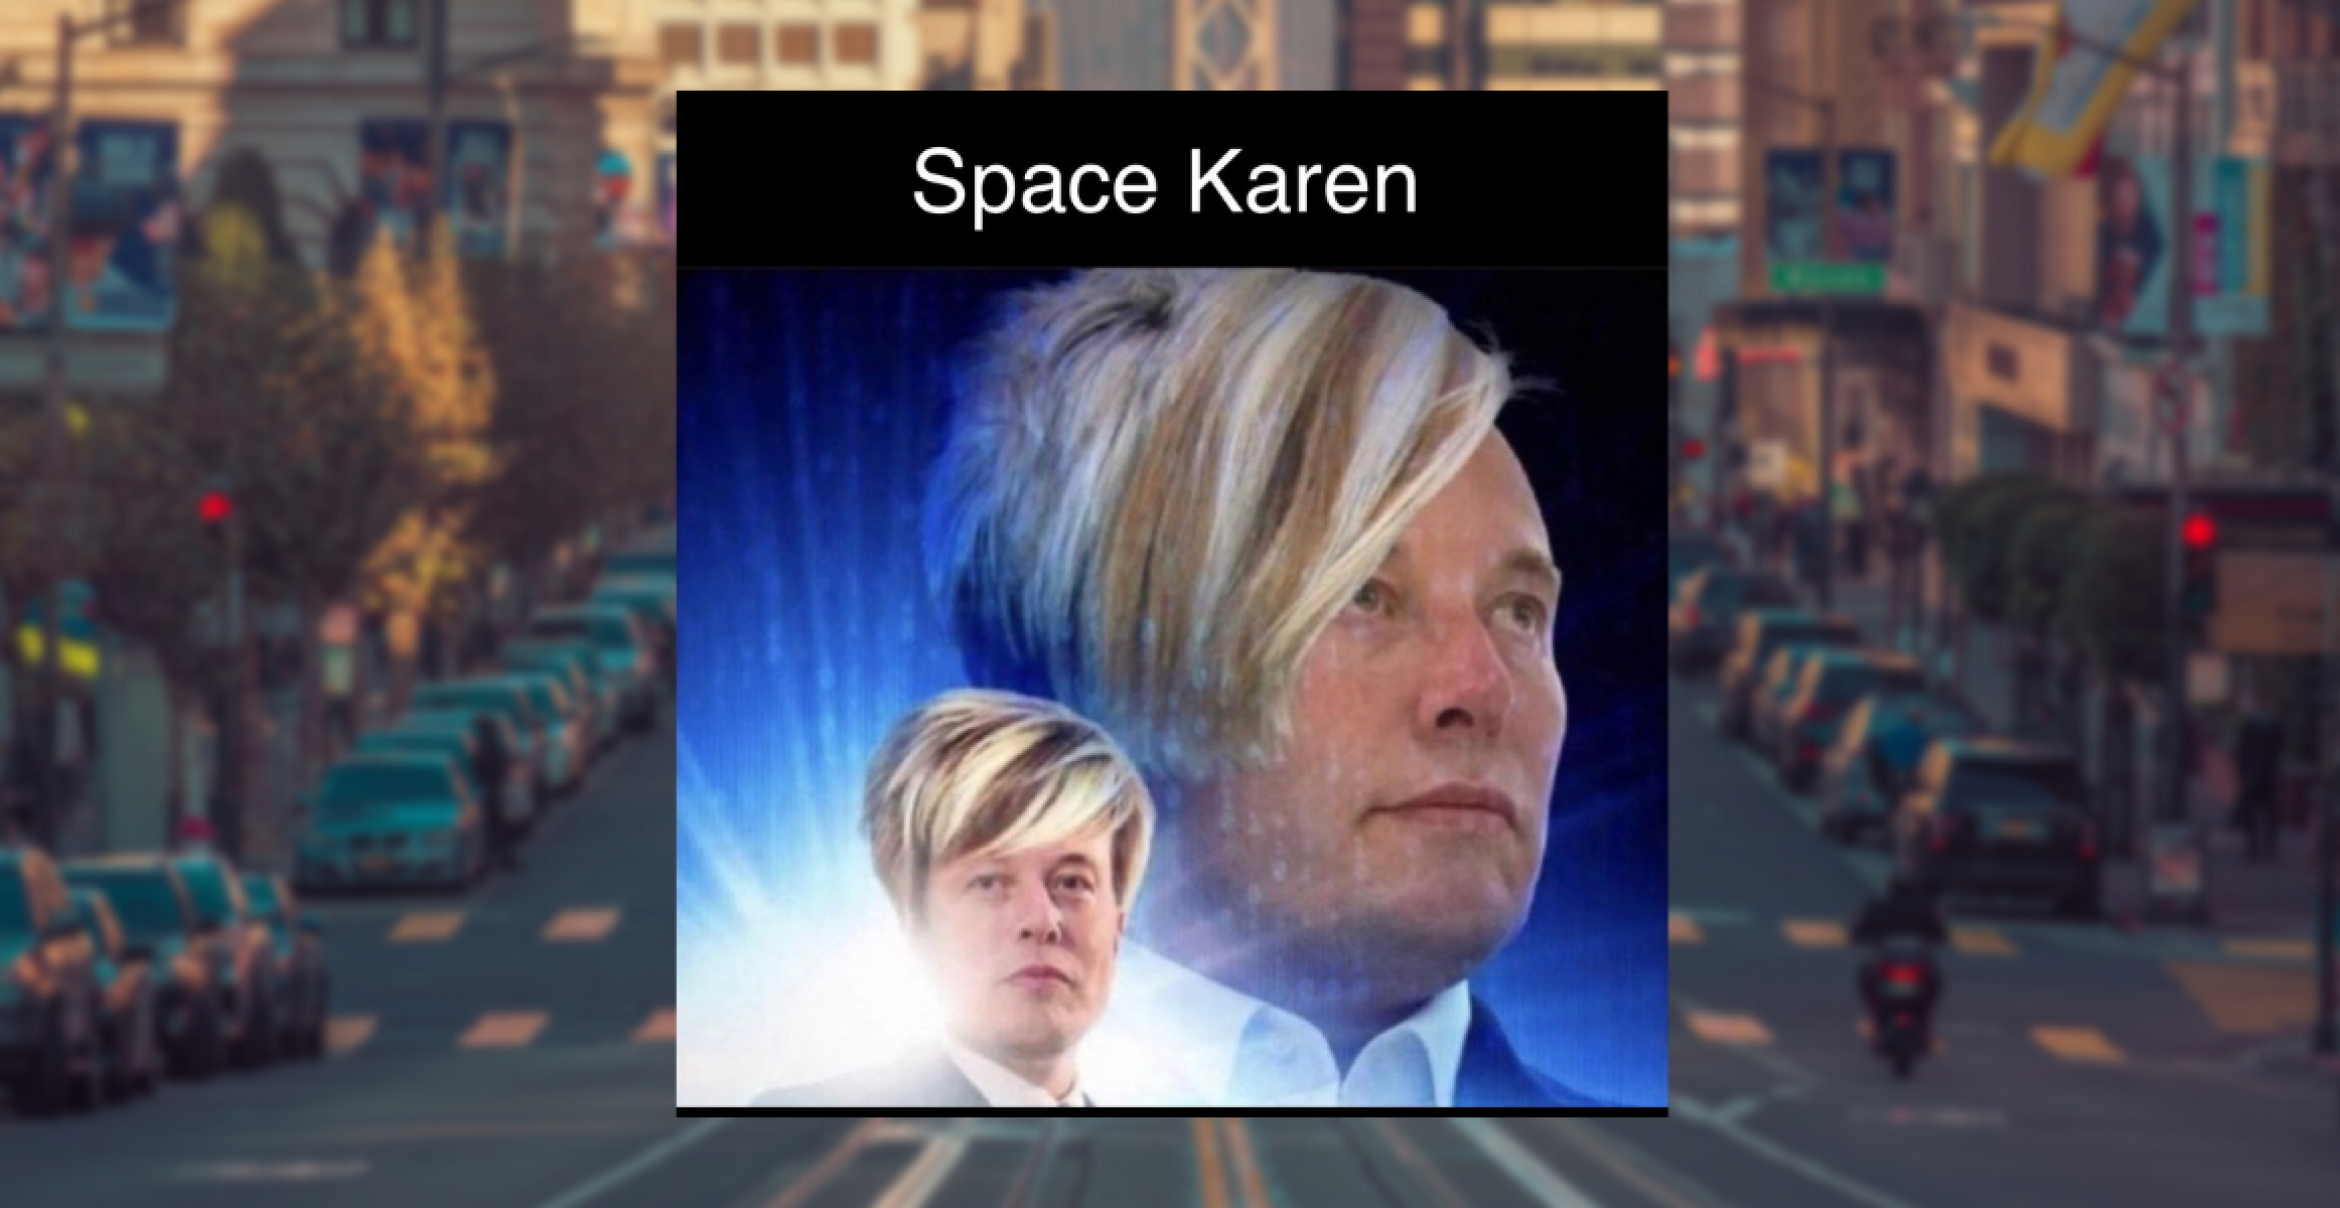 Elon Musk als „Space Karen“: Twitter-HQ wird mit Kritik bestrahlt